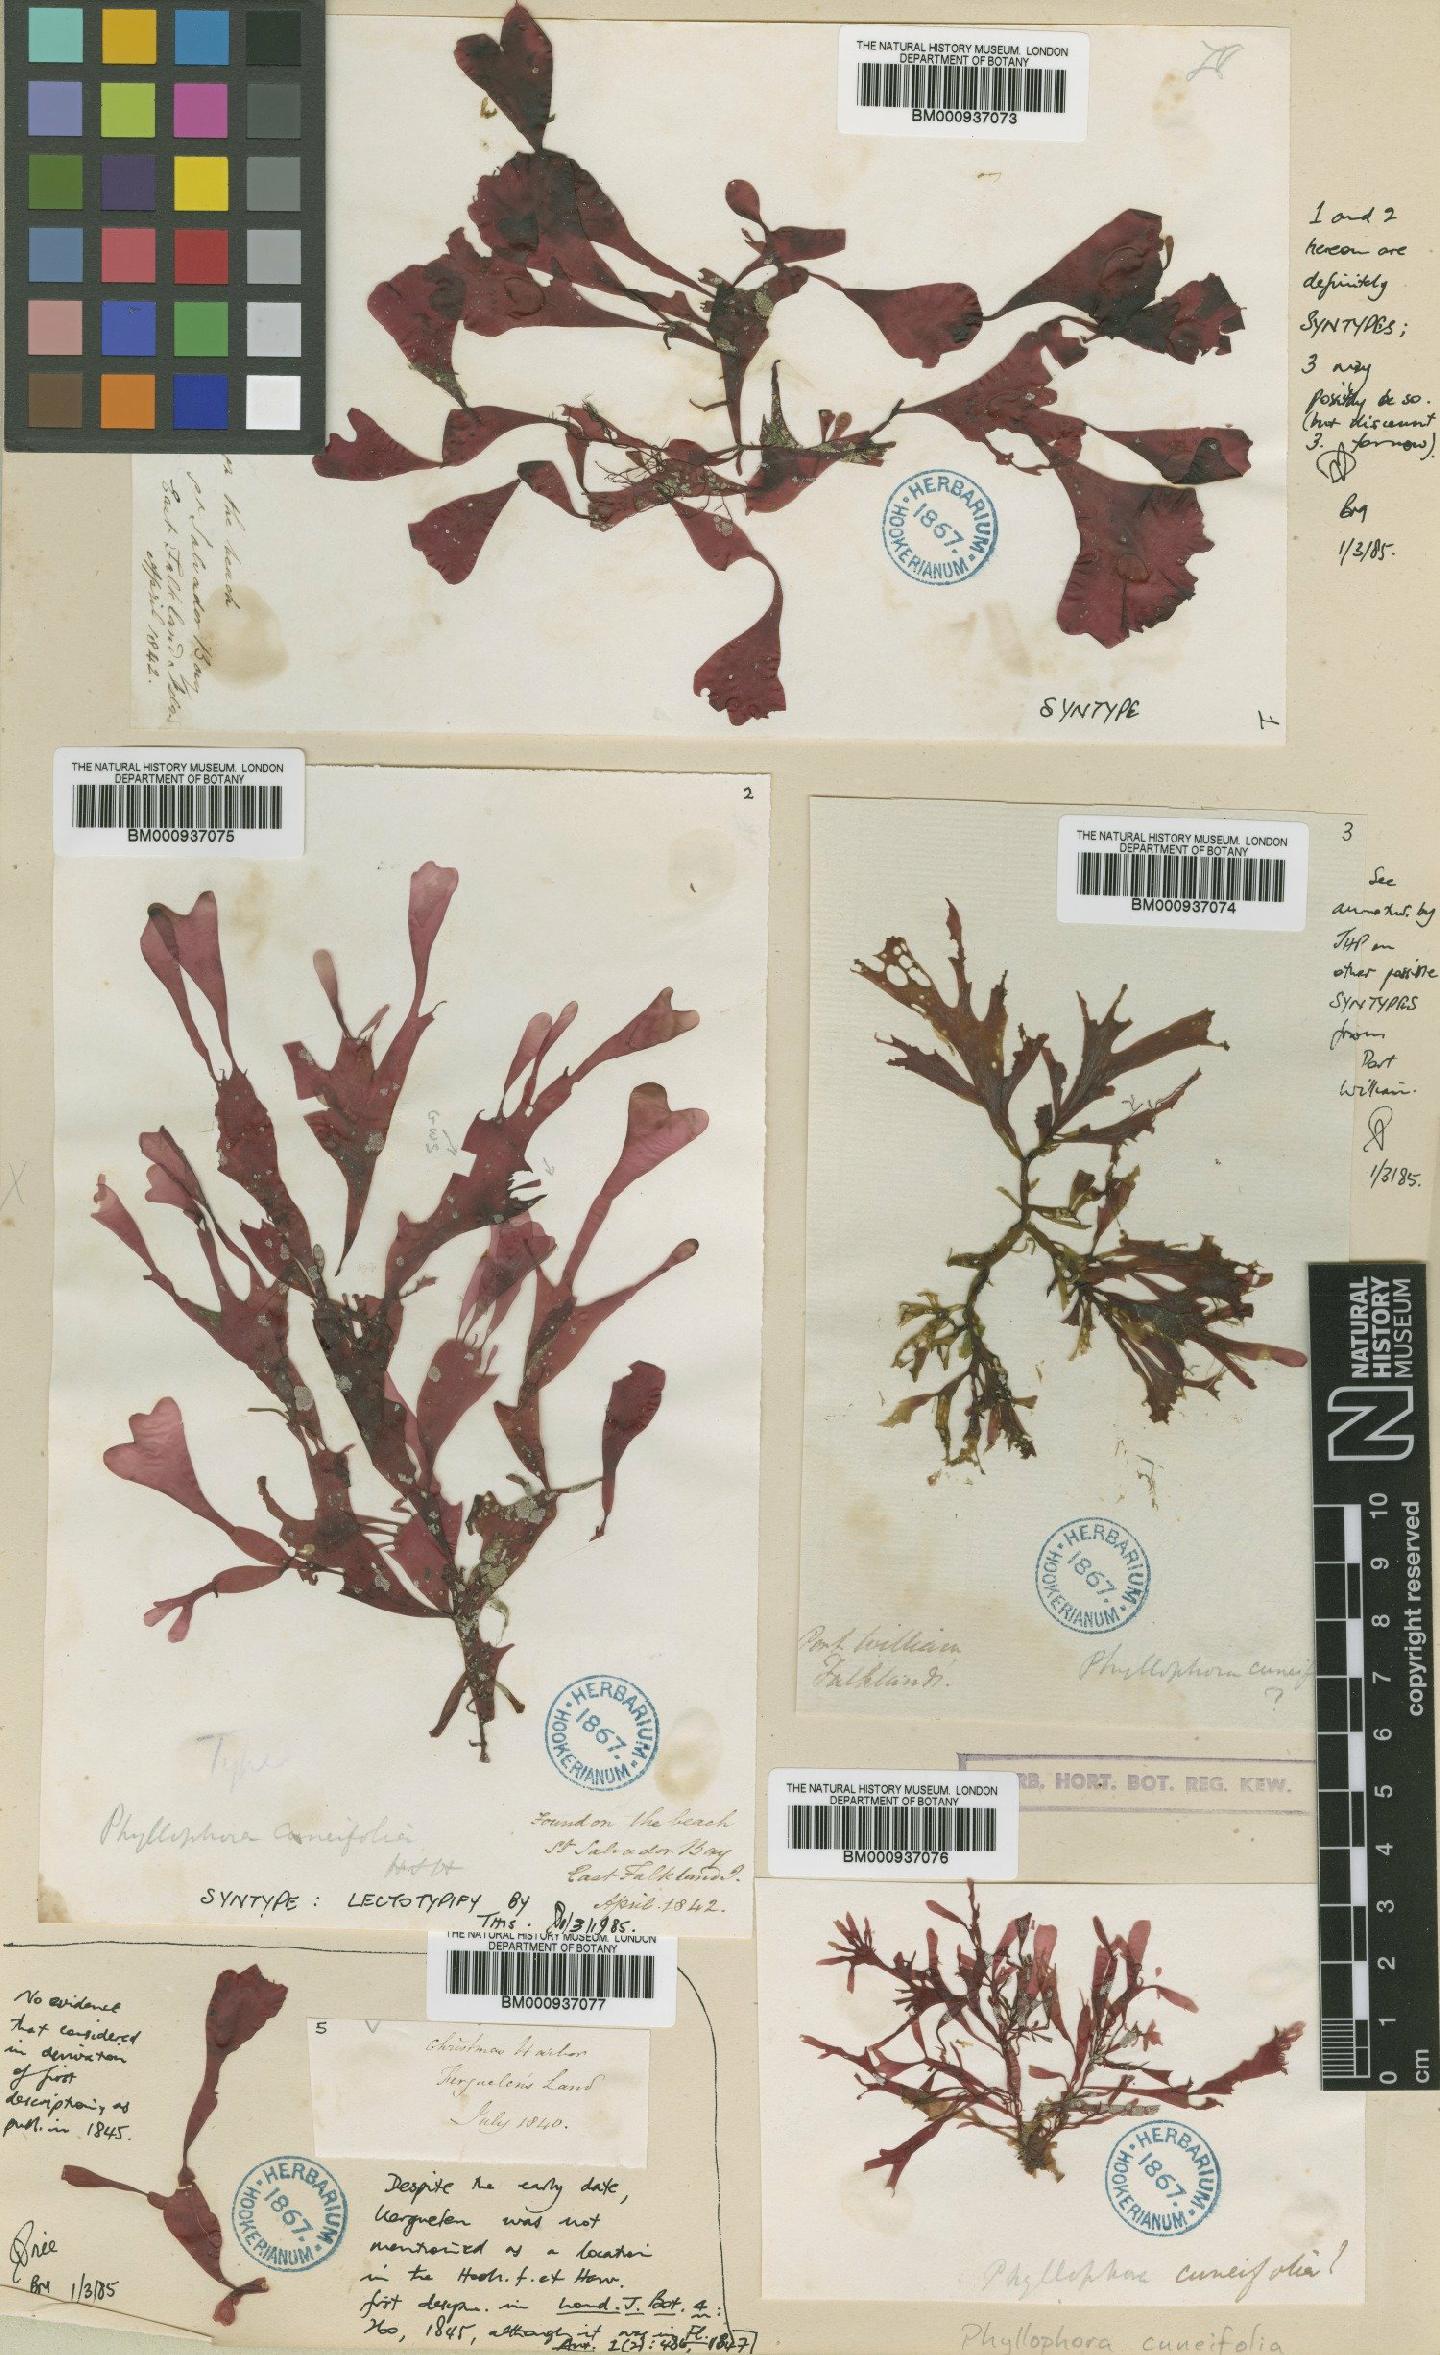 To NHMUK collection (Phyllophora cuneifolia Hook. & Harv.; Syntype; NHMUK:ecatalogue:466258)